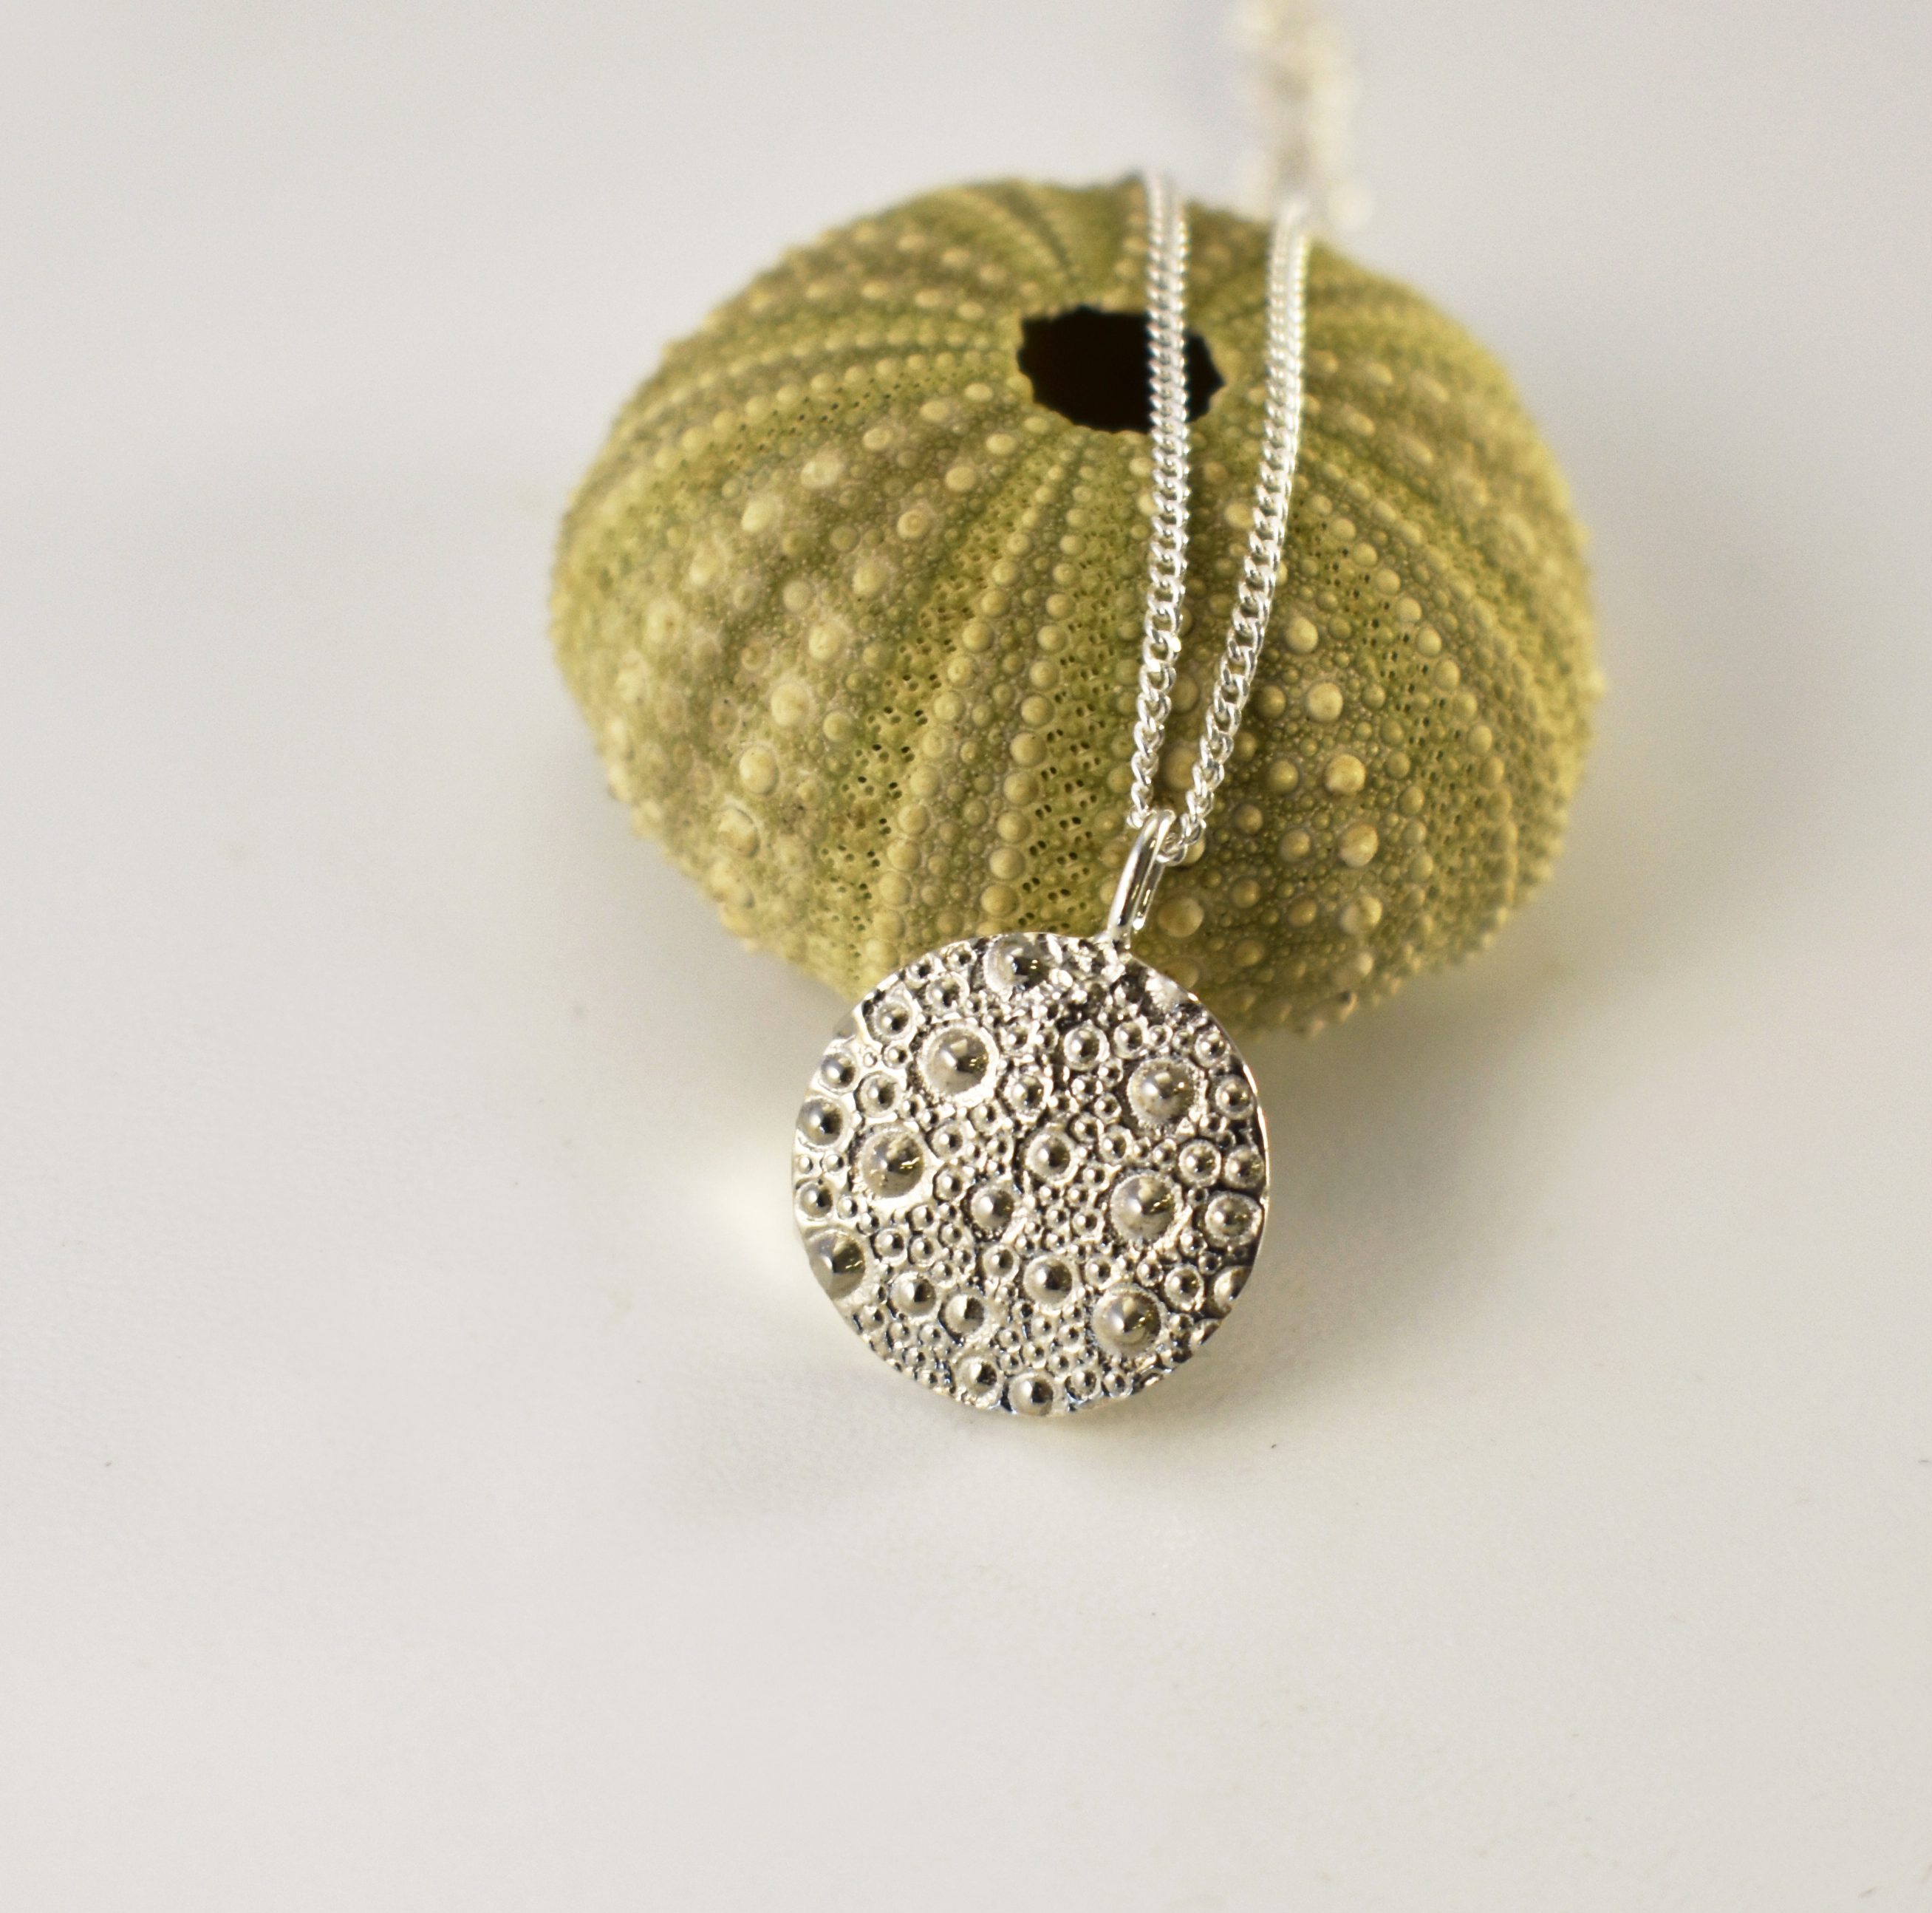 Sea Urchin Round Texture Necklace